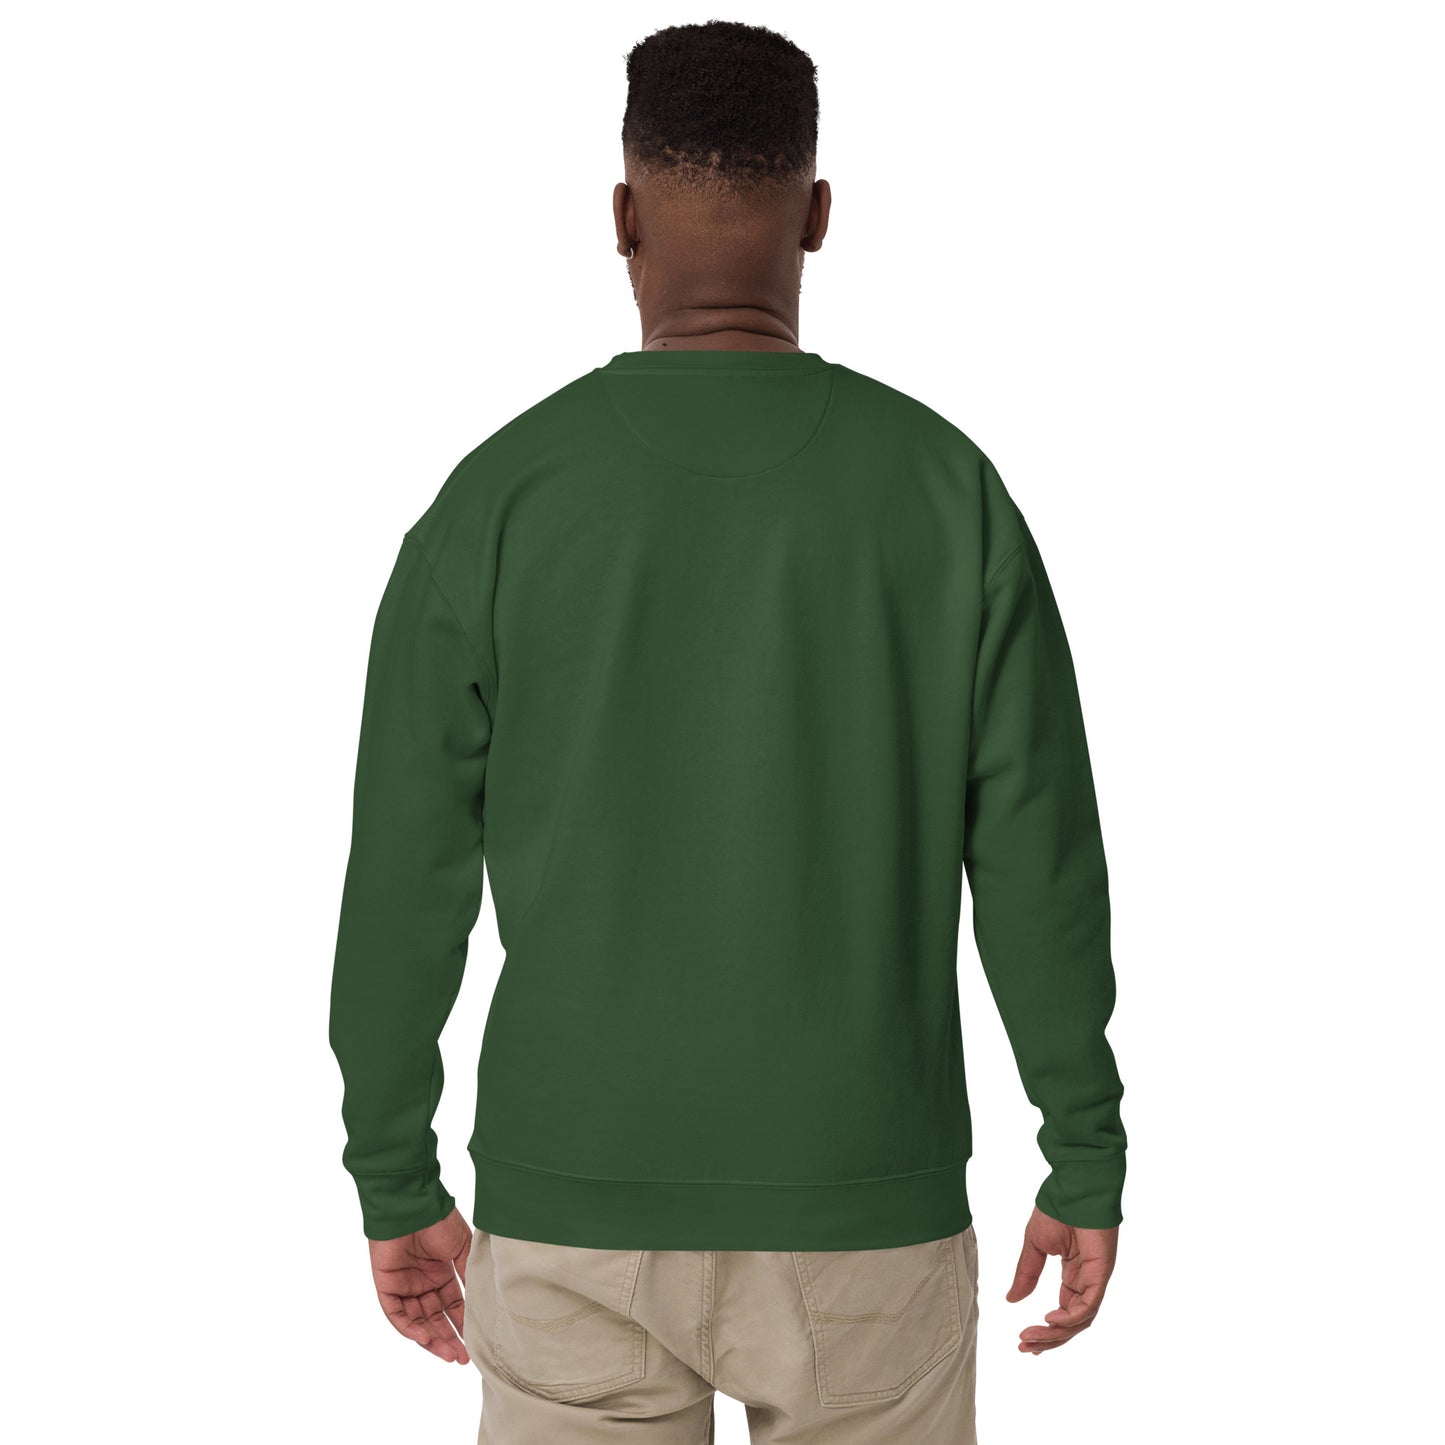 Unisex Premium Sweatshirt - Clarilix